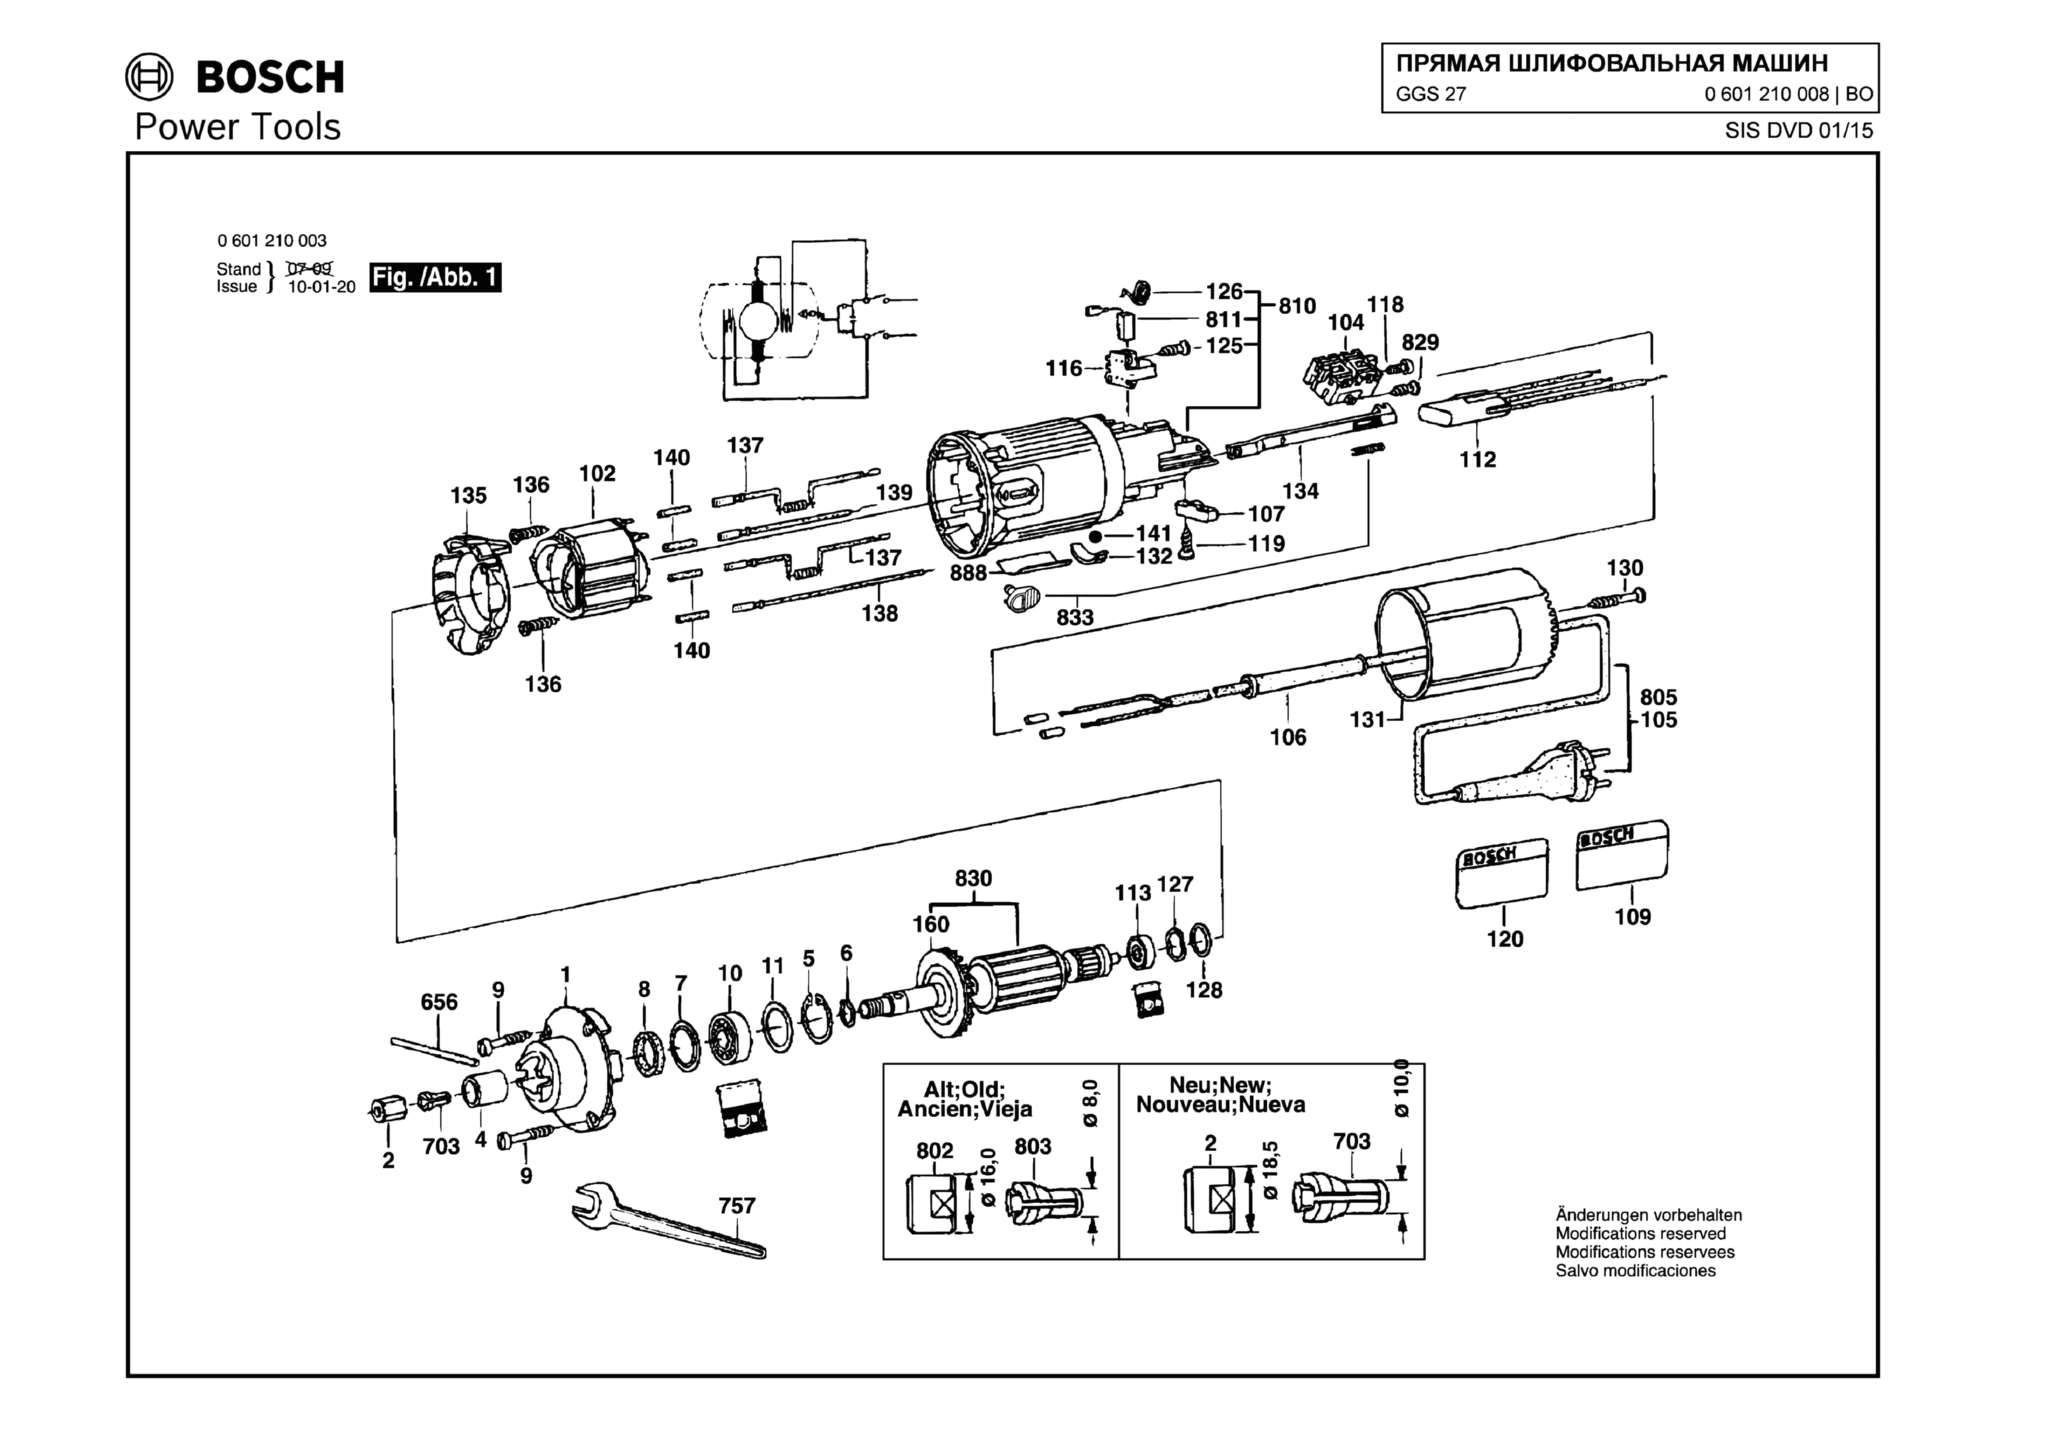 Запчасти, схема и деталировка Bosch GGS 27 (ТИП 0601210008)